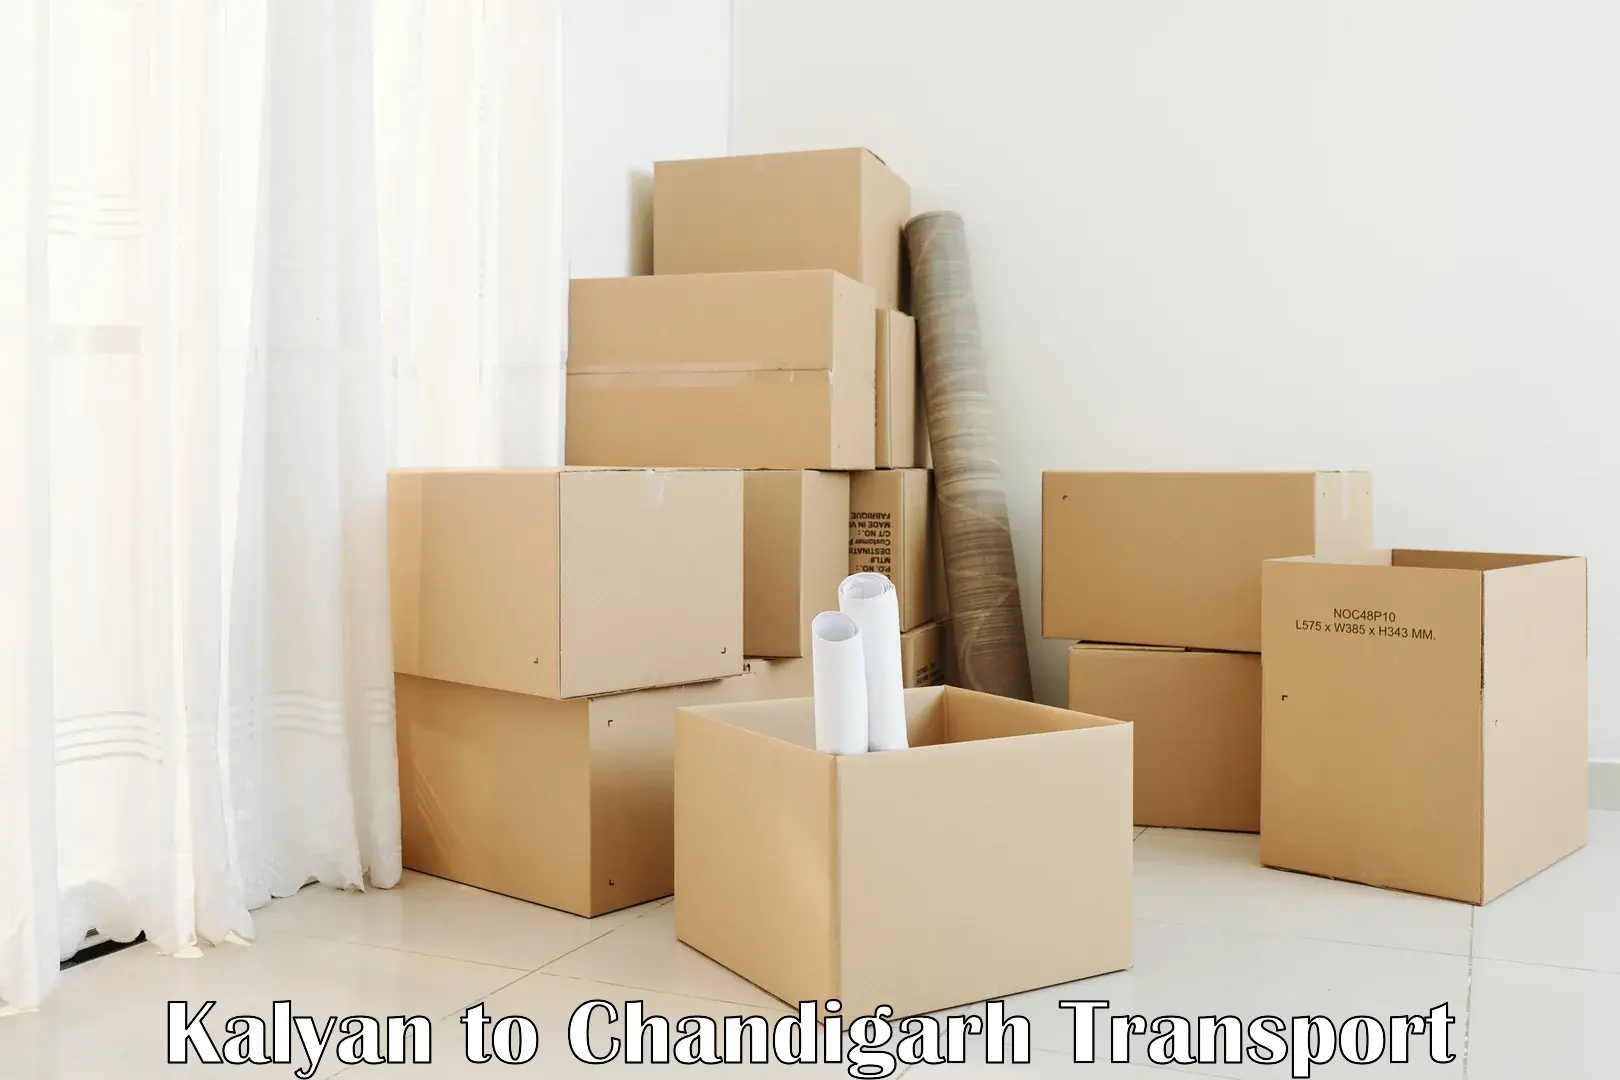 Shipping partner Kalyan to Chandigarh